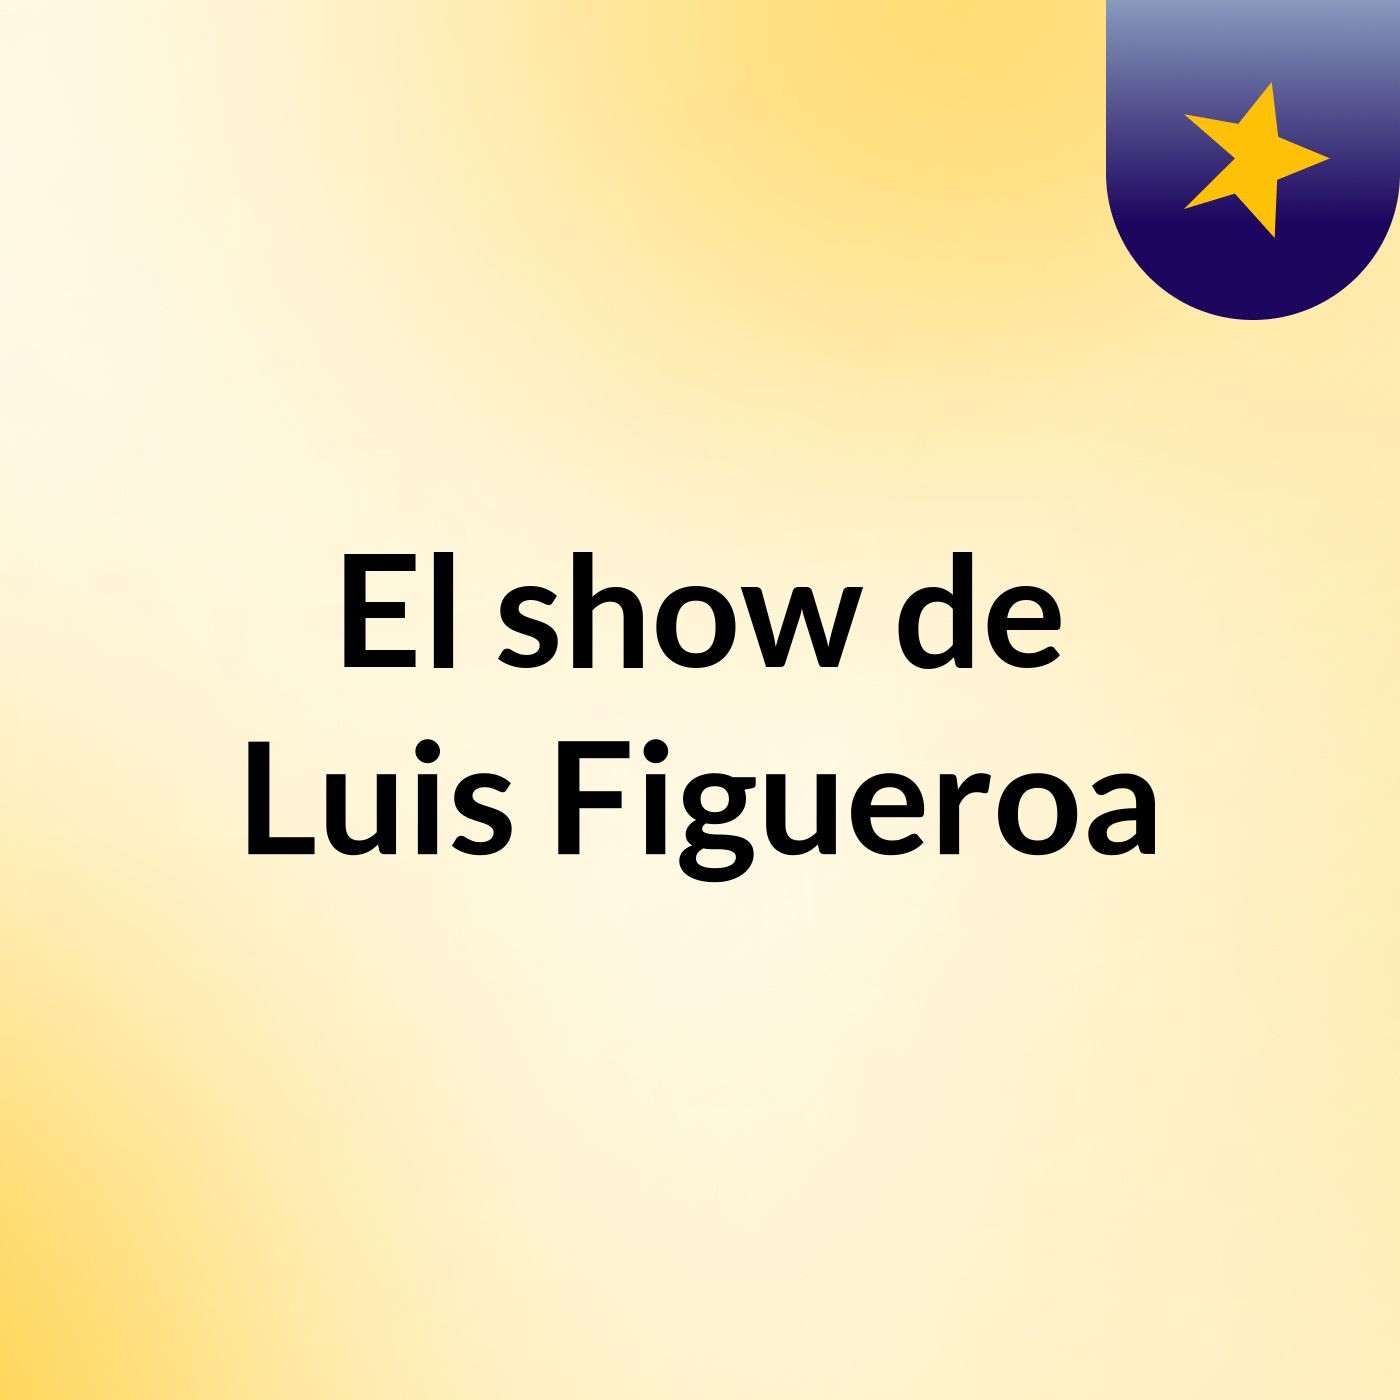 El show de Luis Figueroa